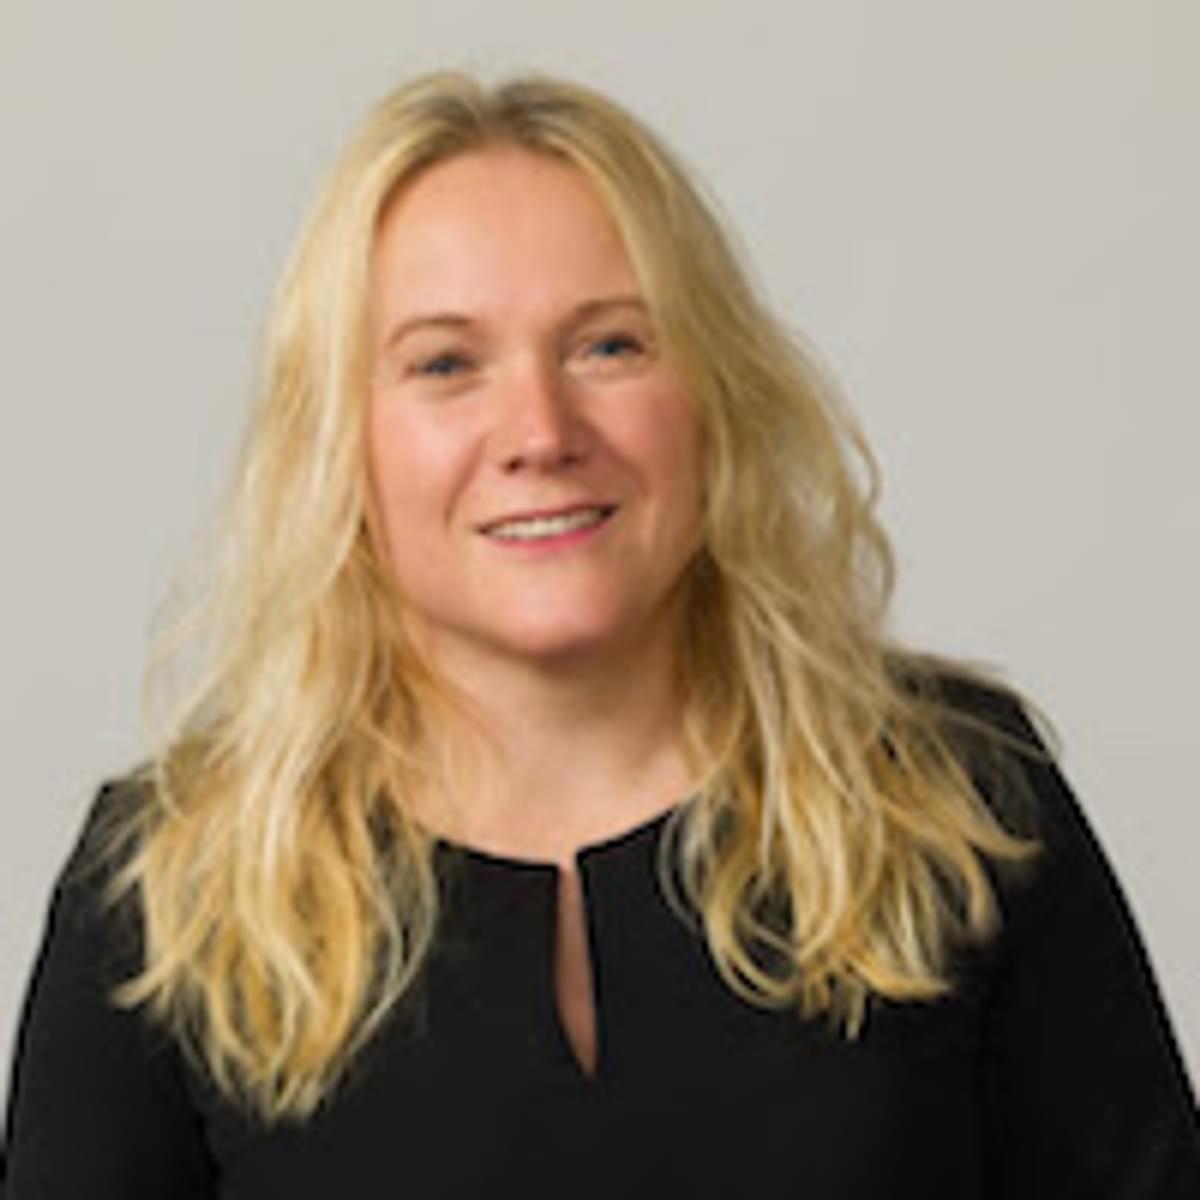 Marieke Brinks benoemd tot Head of Sales bij adesso image